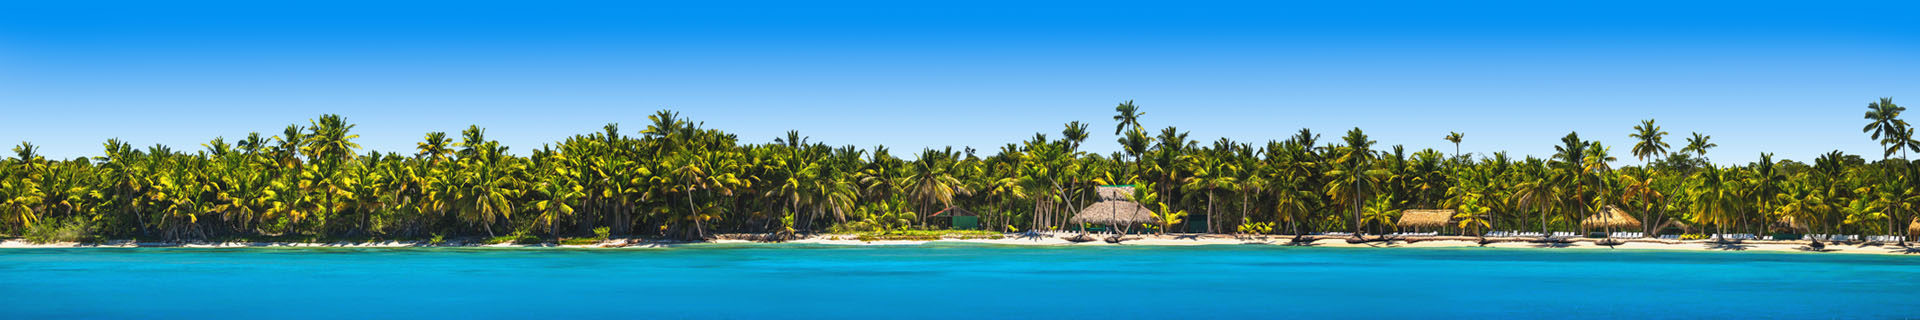 Strand met palmbomen en felblauwe zee Dominicaanse Republiek